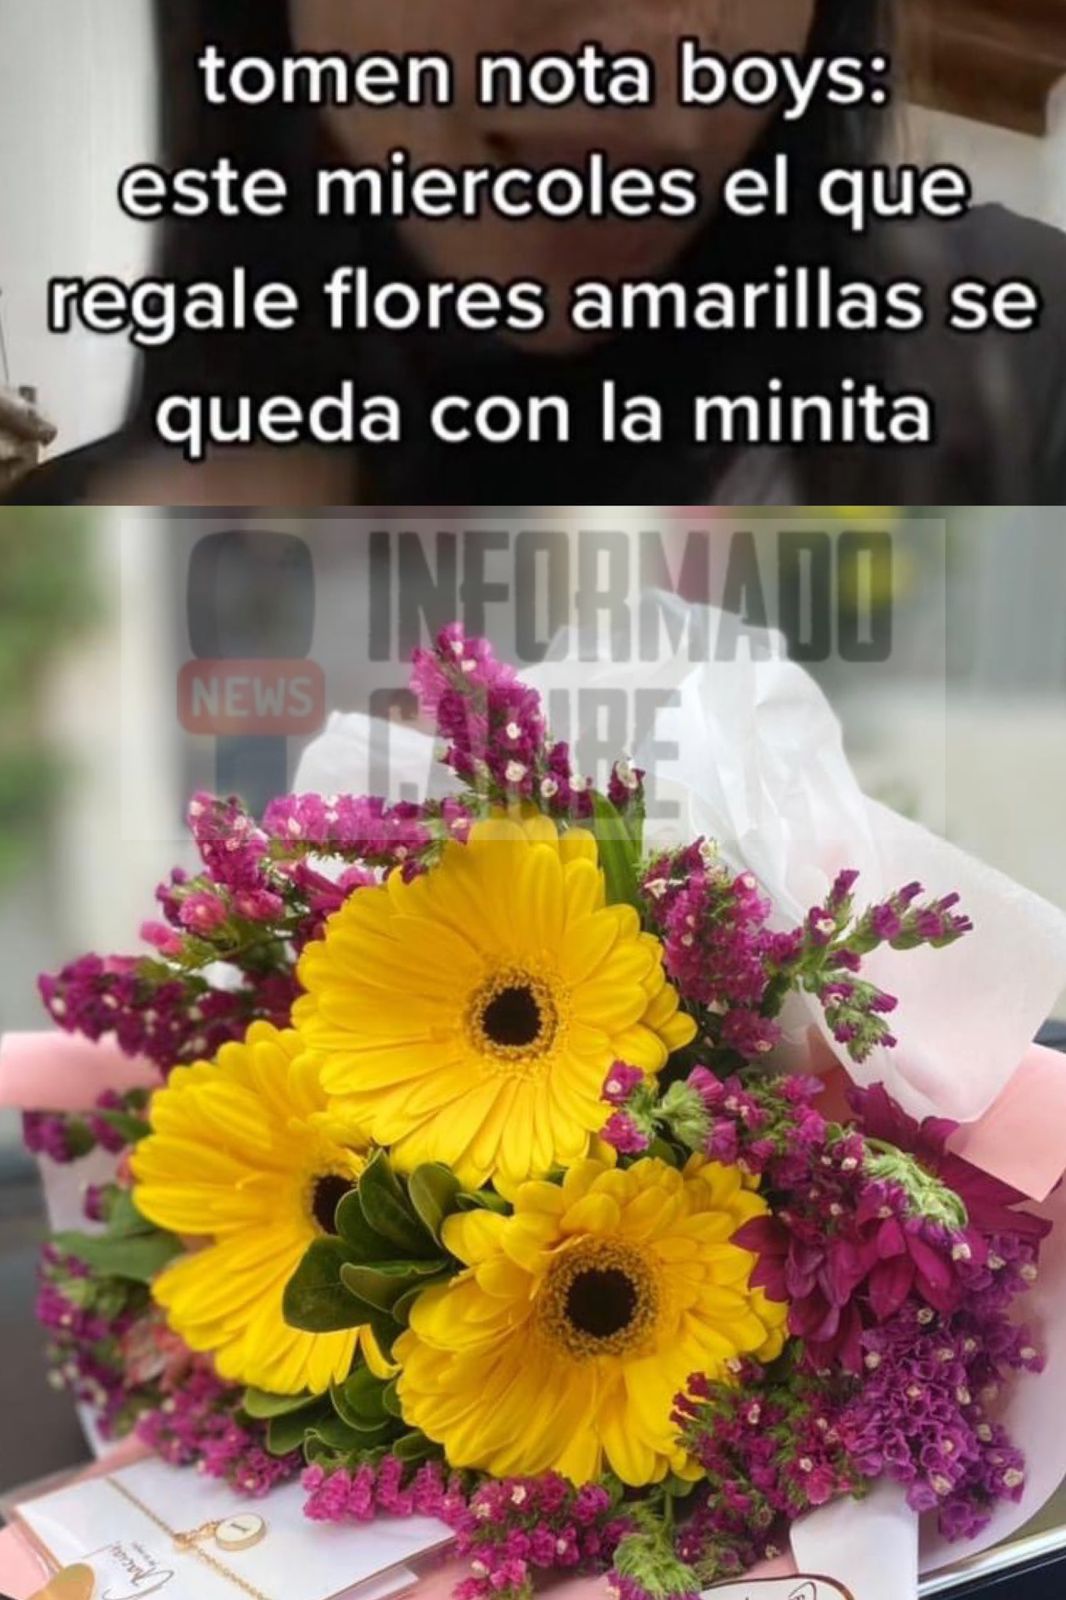 Qué significa regalar flores amarillas el 21 de septiembre? -